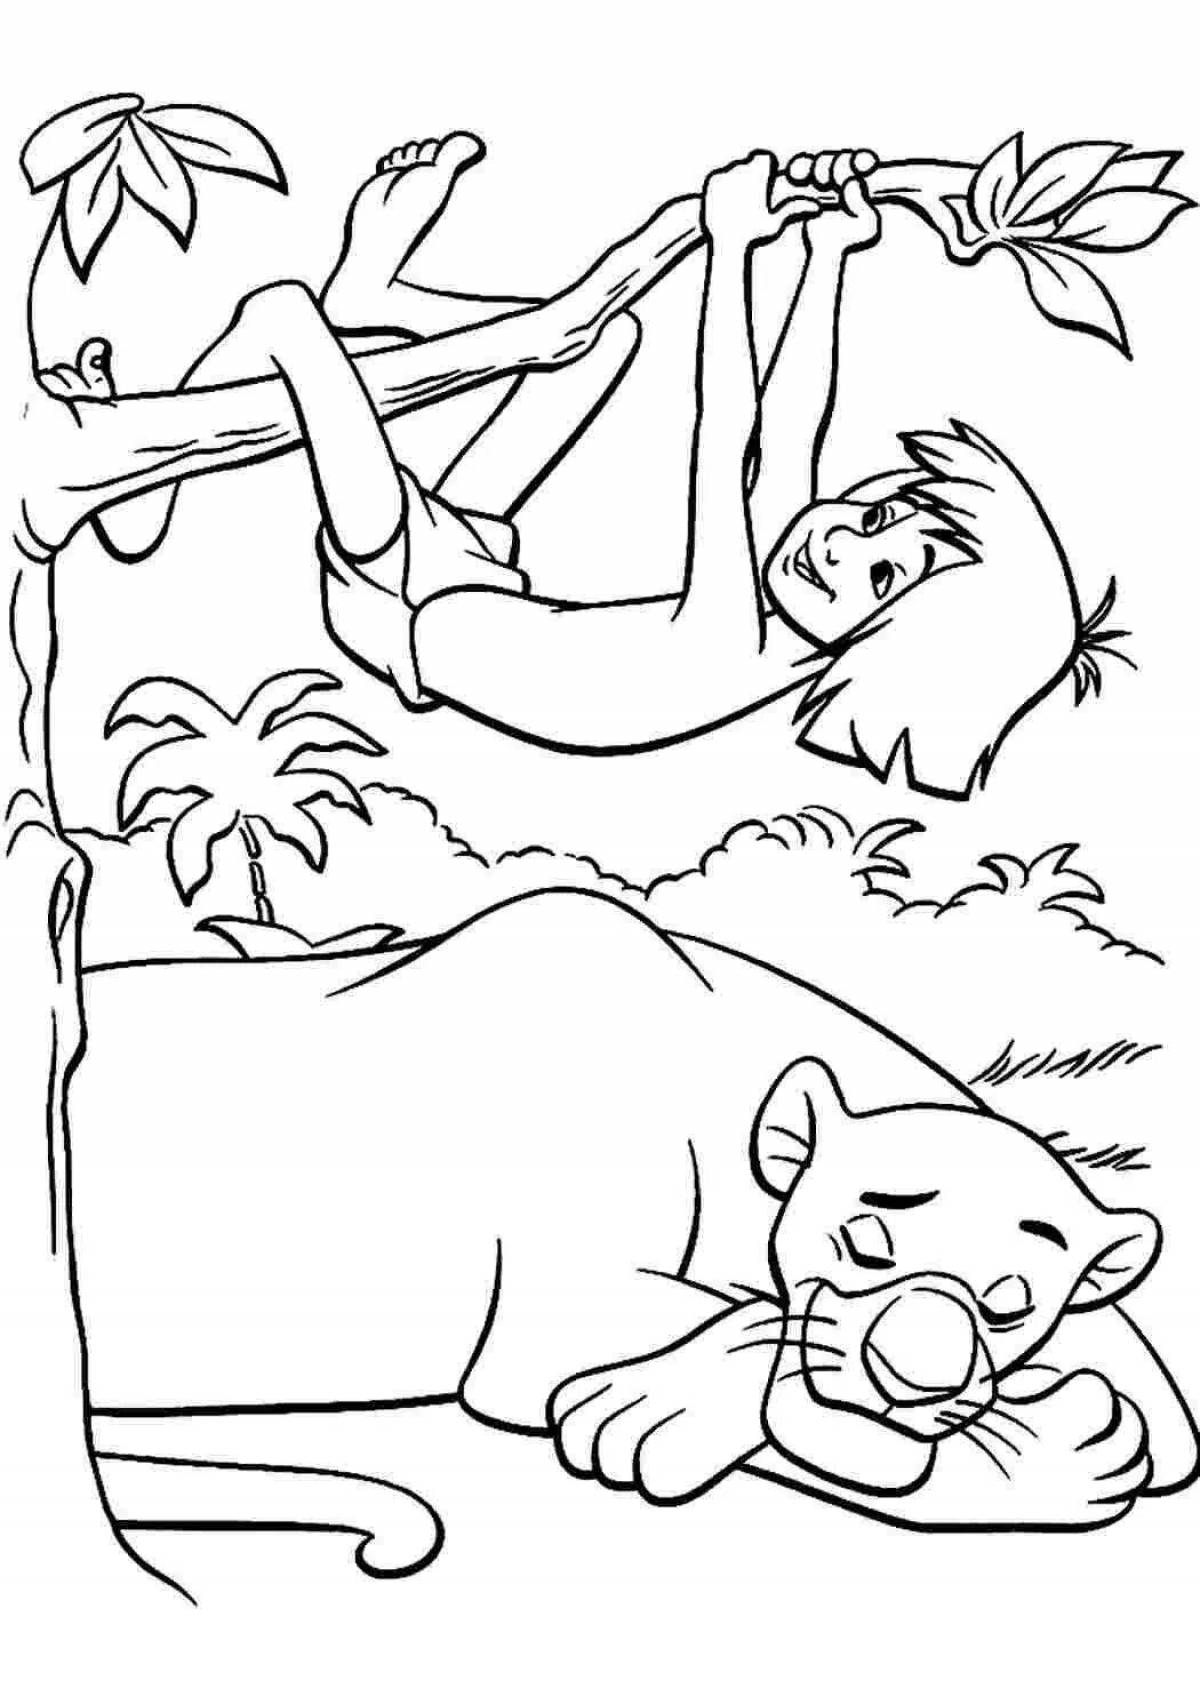 Mowgli coloring page